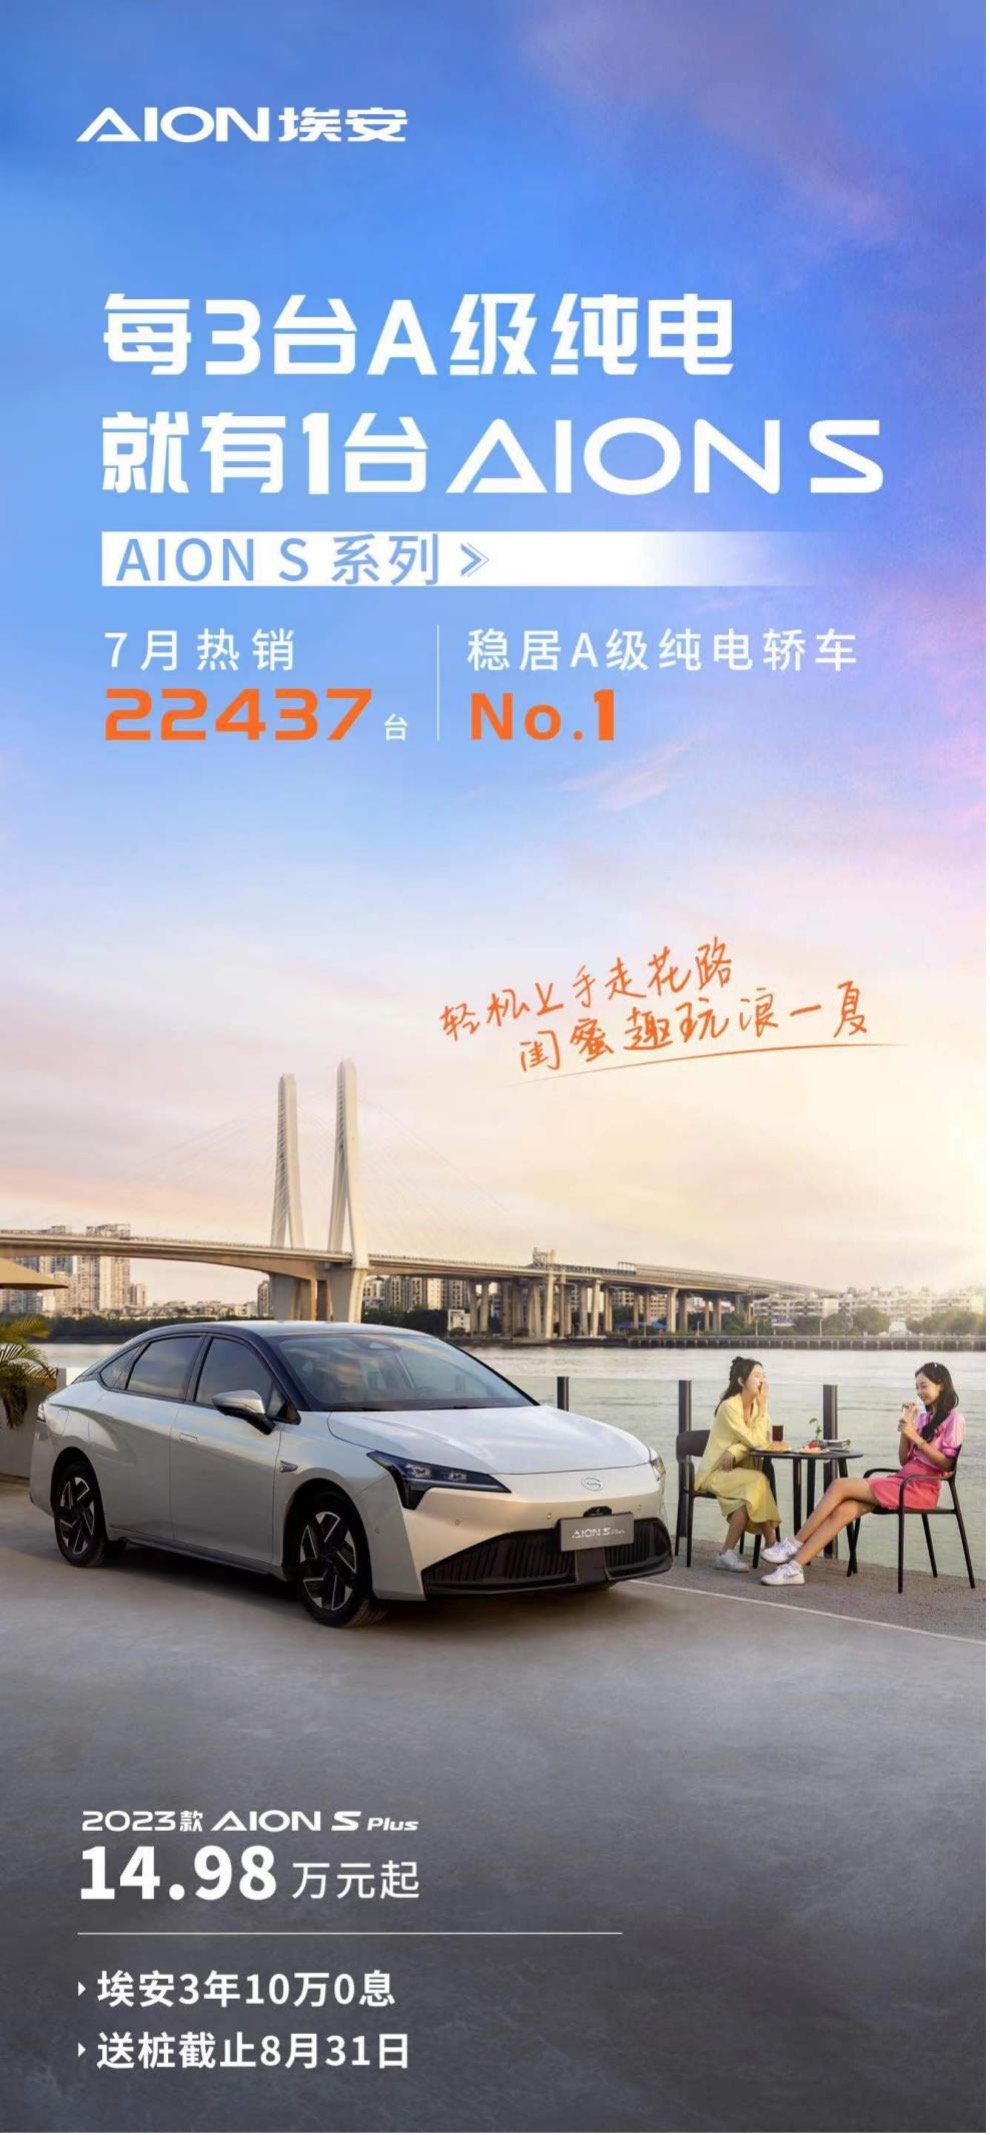 7月AION S系列销量22437台 稳居纯电A级轿车NO.1